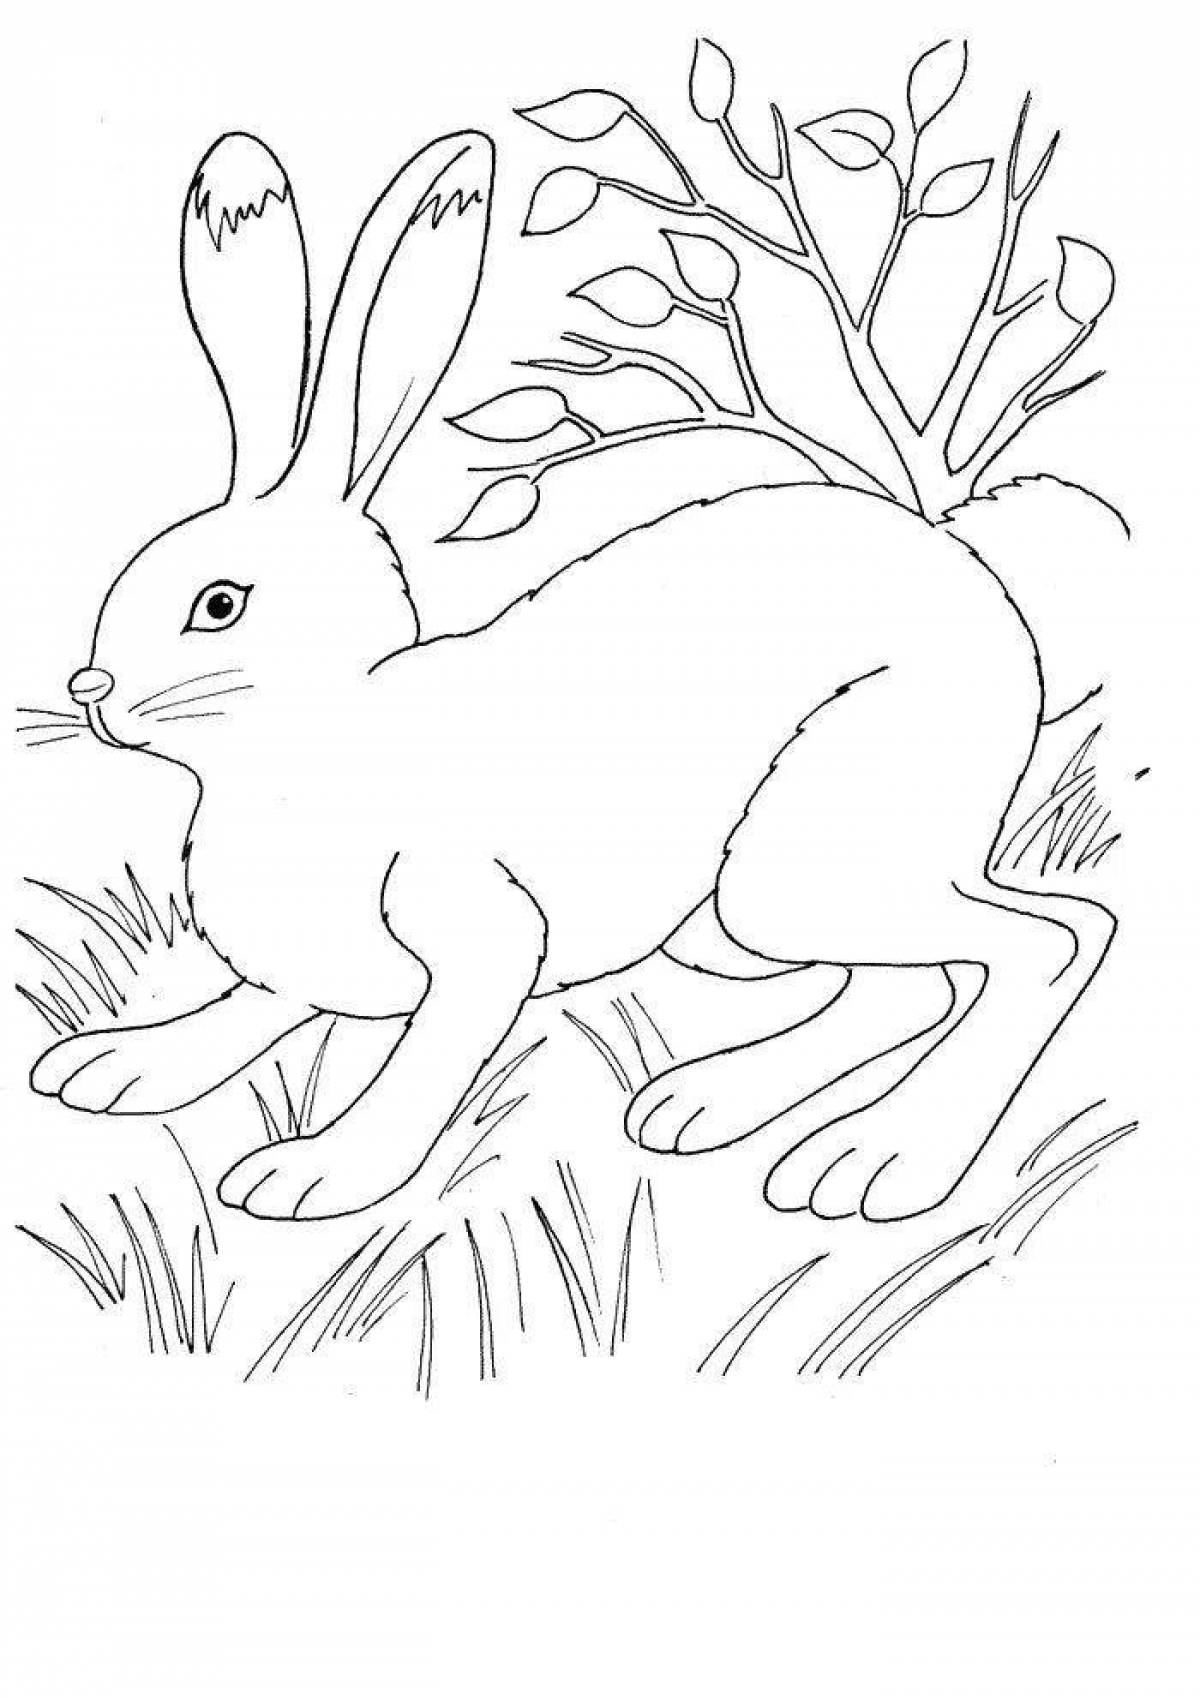 Color-frenzy раскраска рисунок зайца для детей